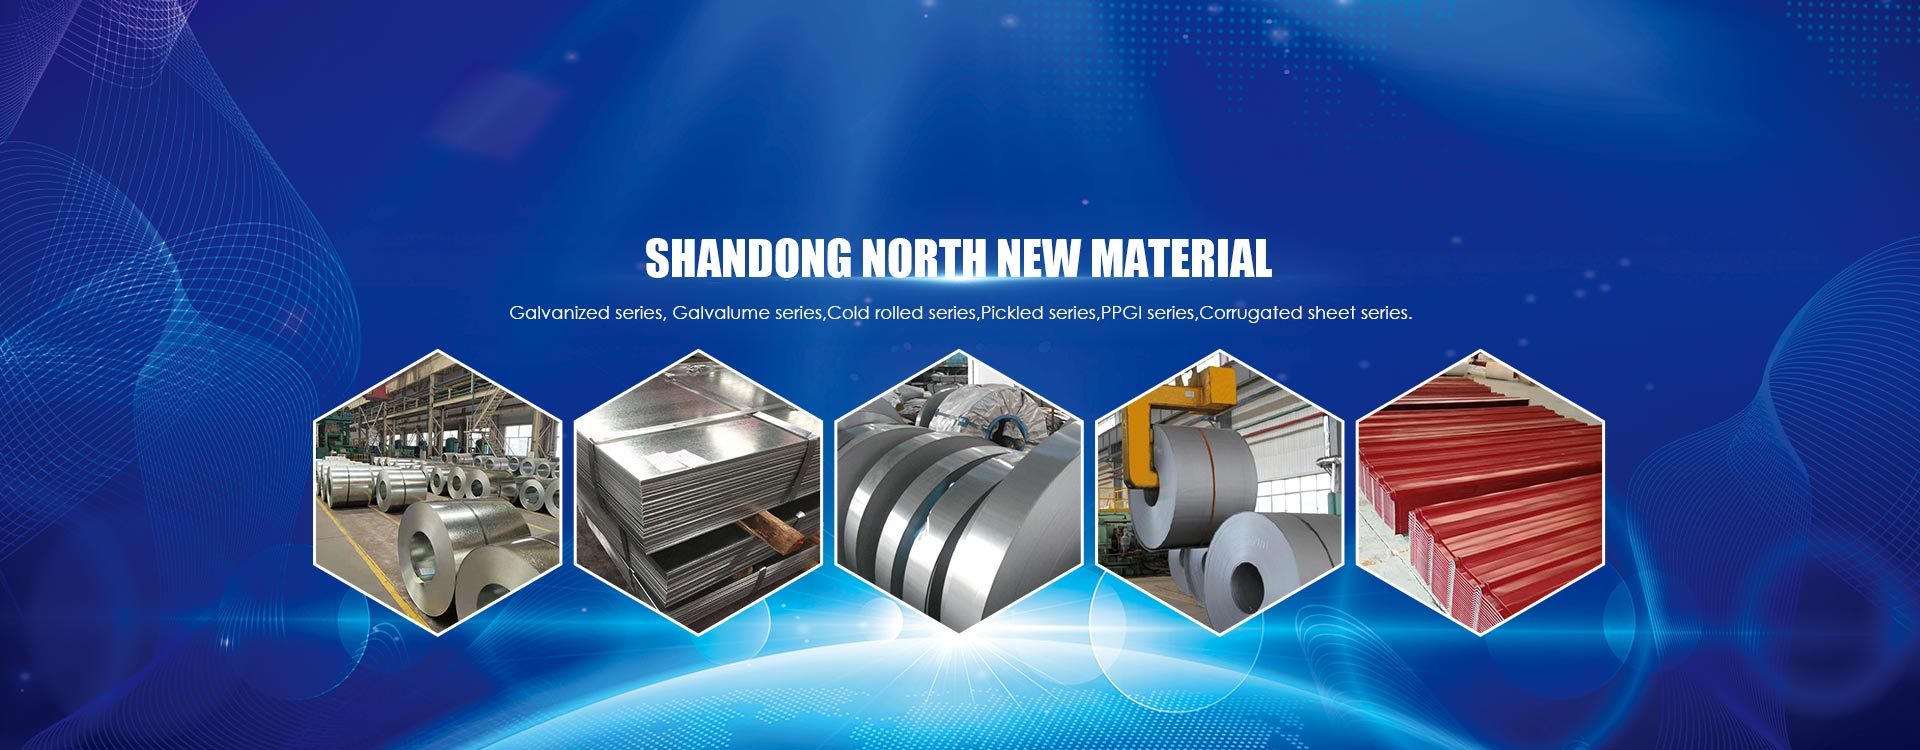 Shandong North New Material